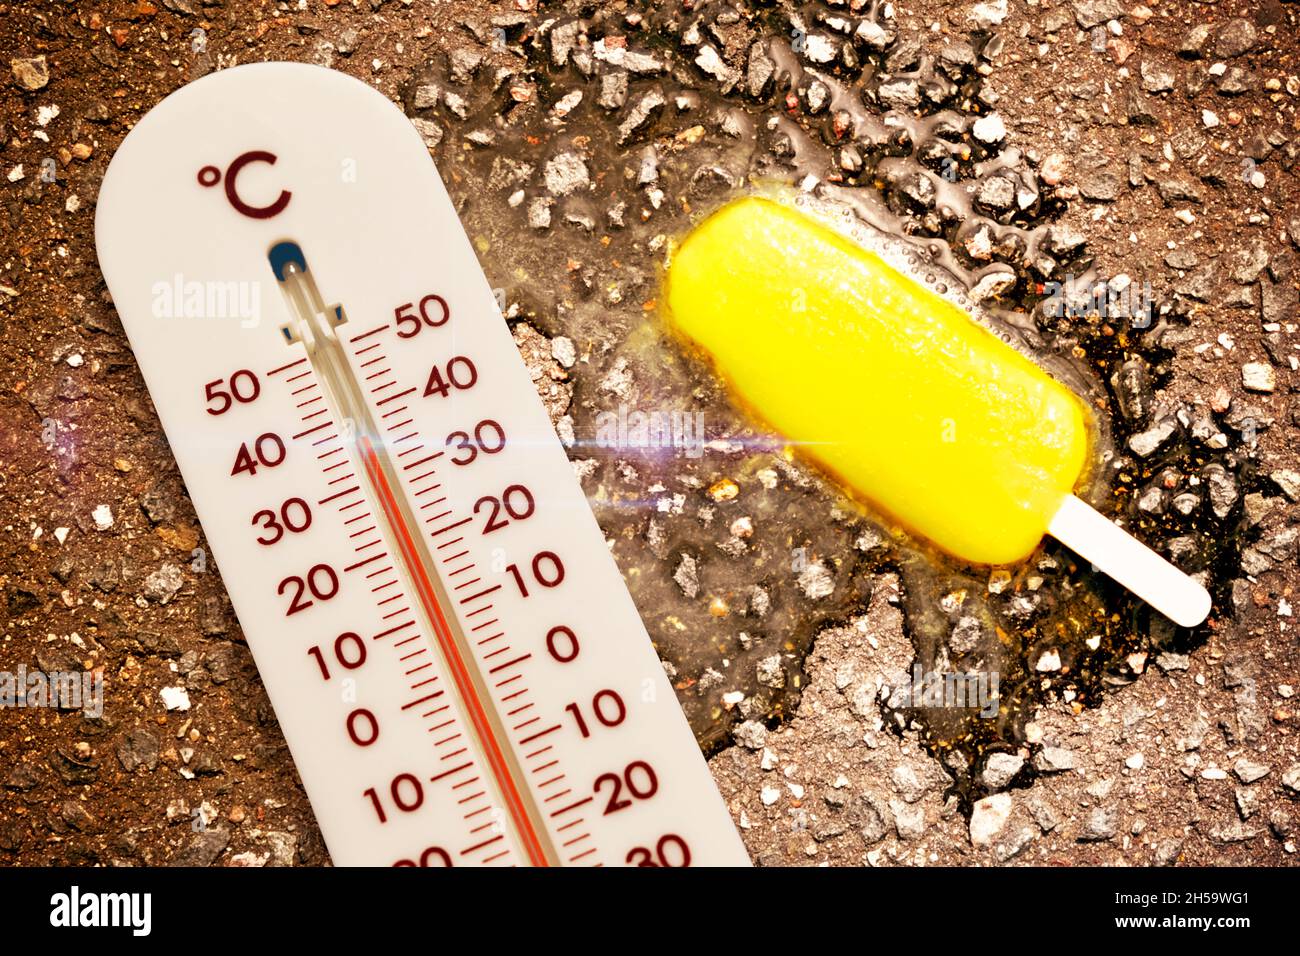 FOTOMONTAGE, Schmelzendes Eis am Stiel und Thermometer, Symbolfoto Hitzewelle Stock Photo